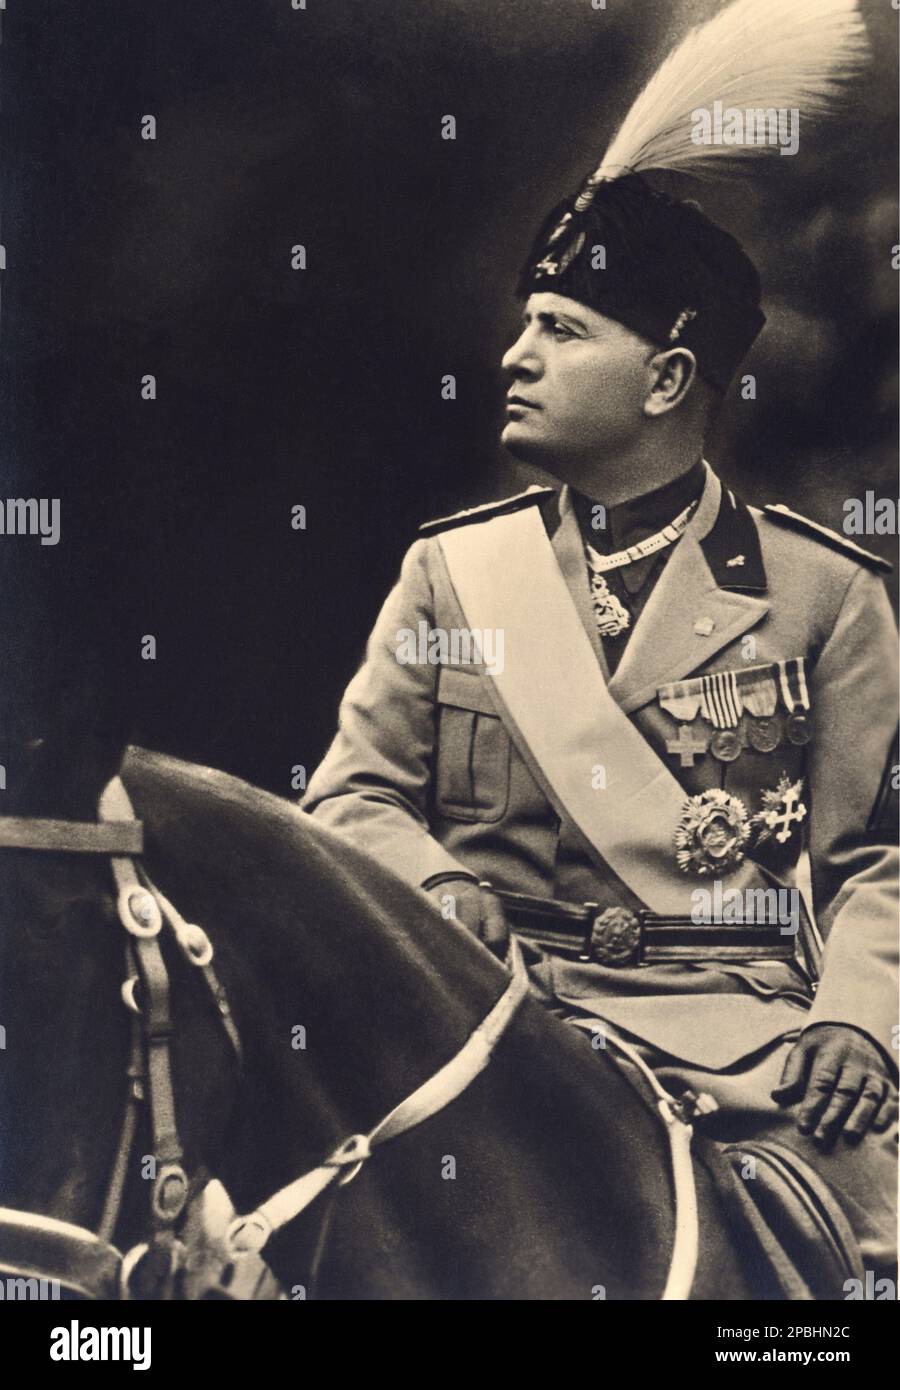 1937 ca. , Roma , Italy : The italian Fascist Duce BENITO MUSSOLINI at time of proclamation of the Impero d' Italia  - ritratto - portrait - POLITICA - POLITICO -  ITALIA - POLITIC - portrait - ITALY - FASCISMO - FASCISM - FASCISTA - military uniform - divisa - uniforme militare - feathers - piume - hat - cappello - medails - medaglia - medaglie - collare dell' Annunziata - WWII - SECONDA GUERRA MONDIALE - 2nd - COLOSSEO - ROME - ITALIA - guanti - gloves - horse - cavallo   ----  Archivio GBB Stock Photo